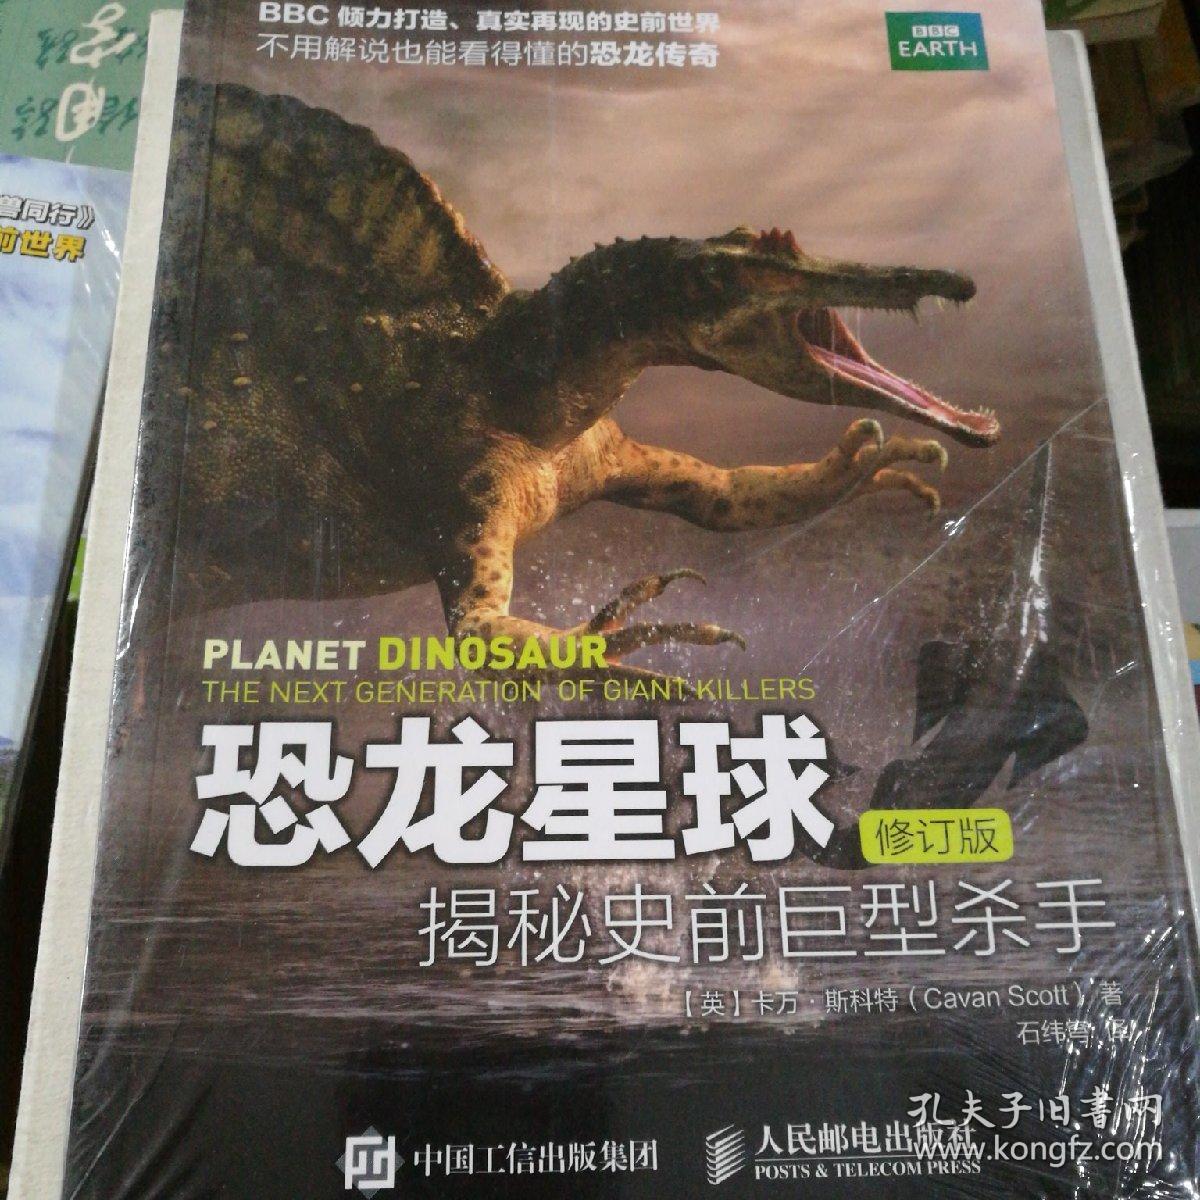 恐龙星球 修订版揭秘史前巨型杀手。
与古生物同行 bbc失落的史前世界
两本合售。